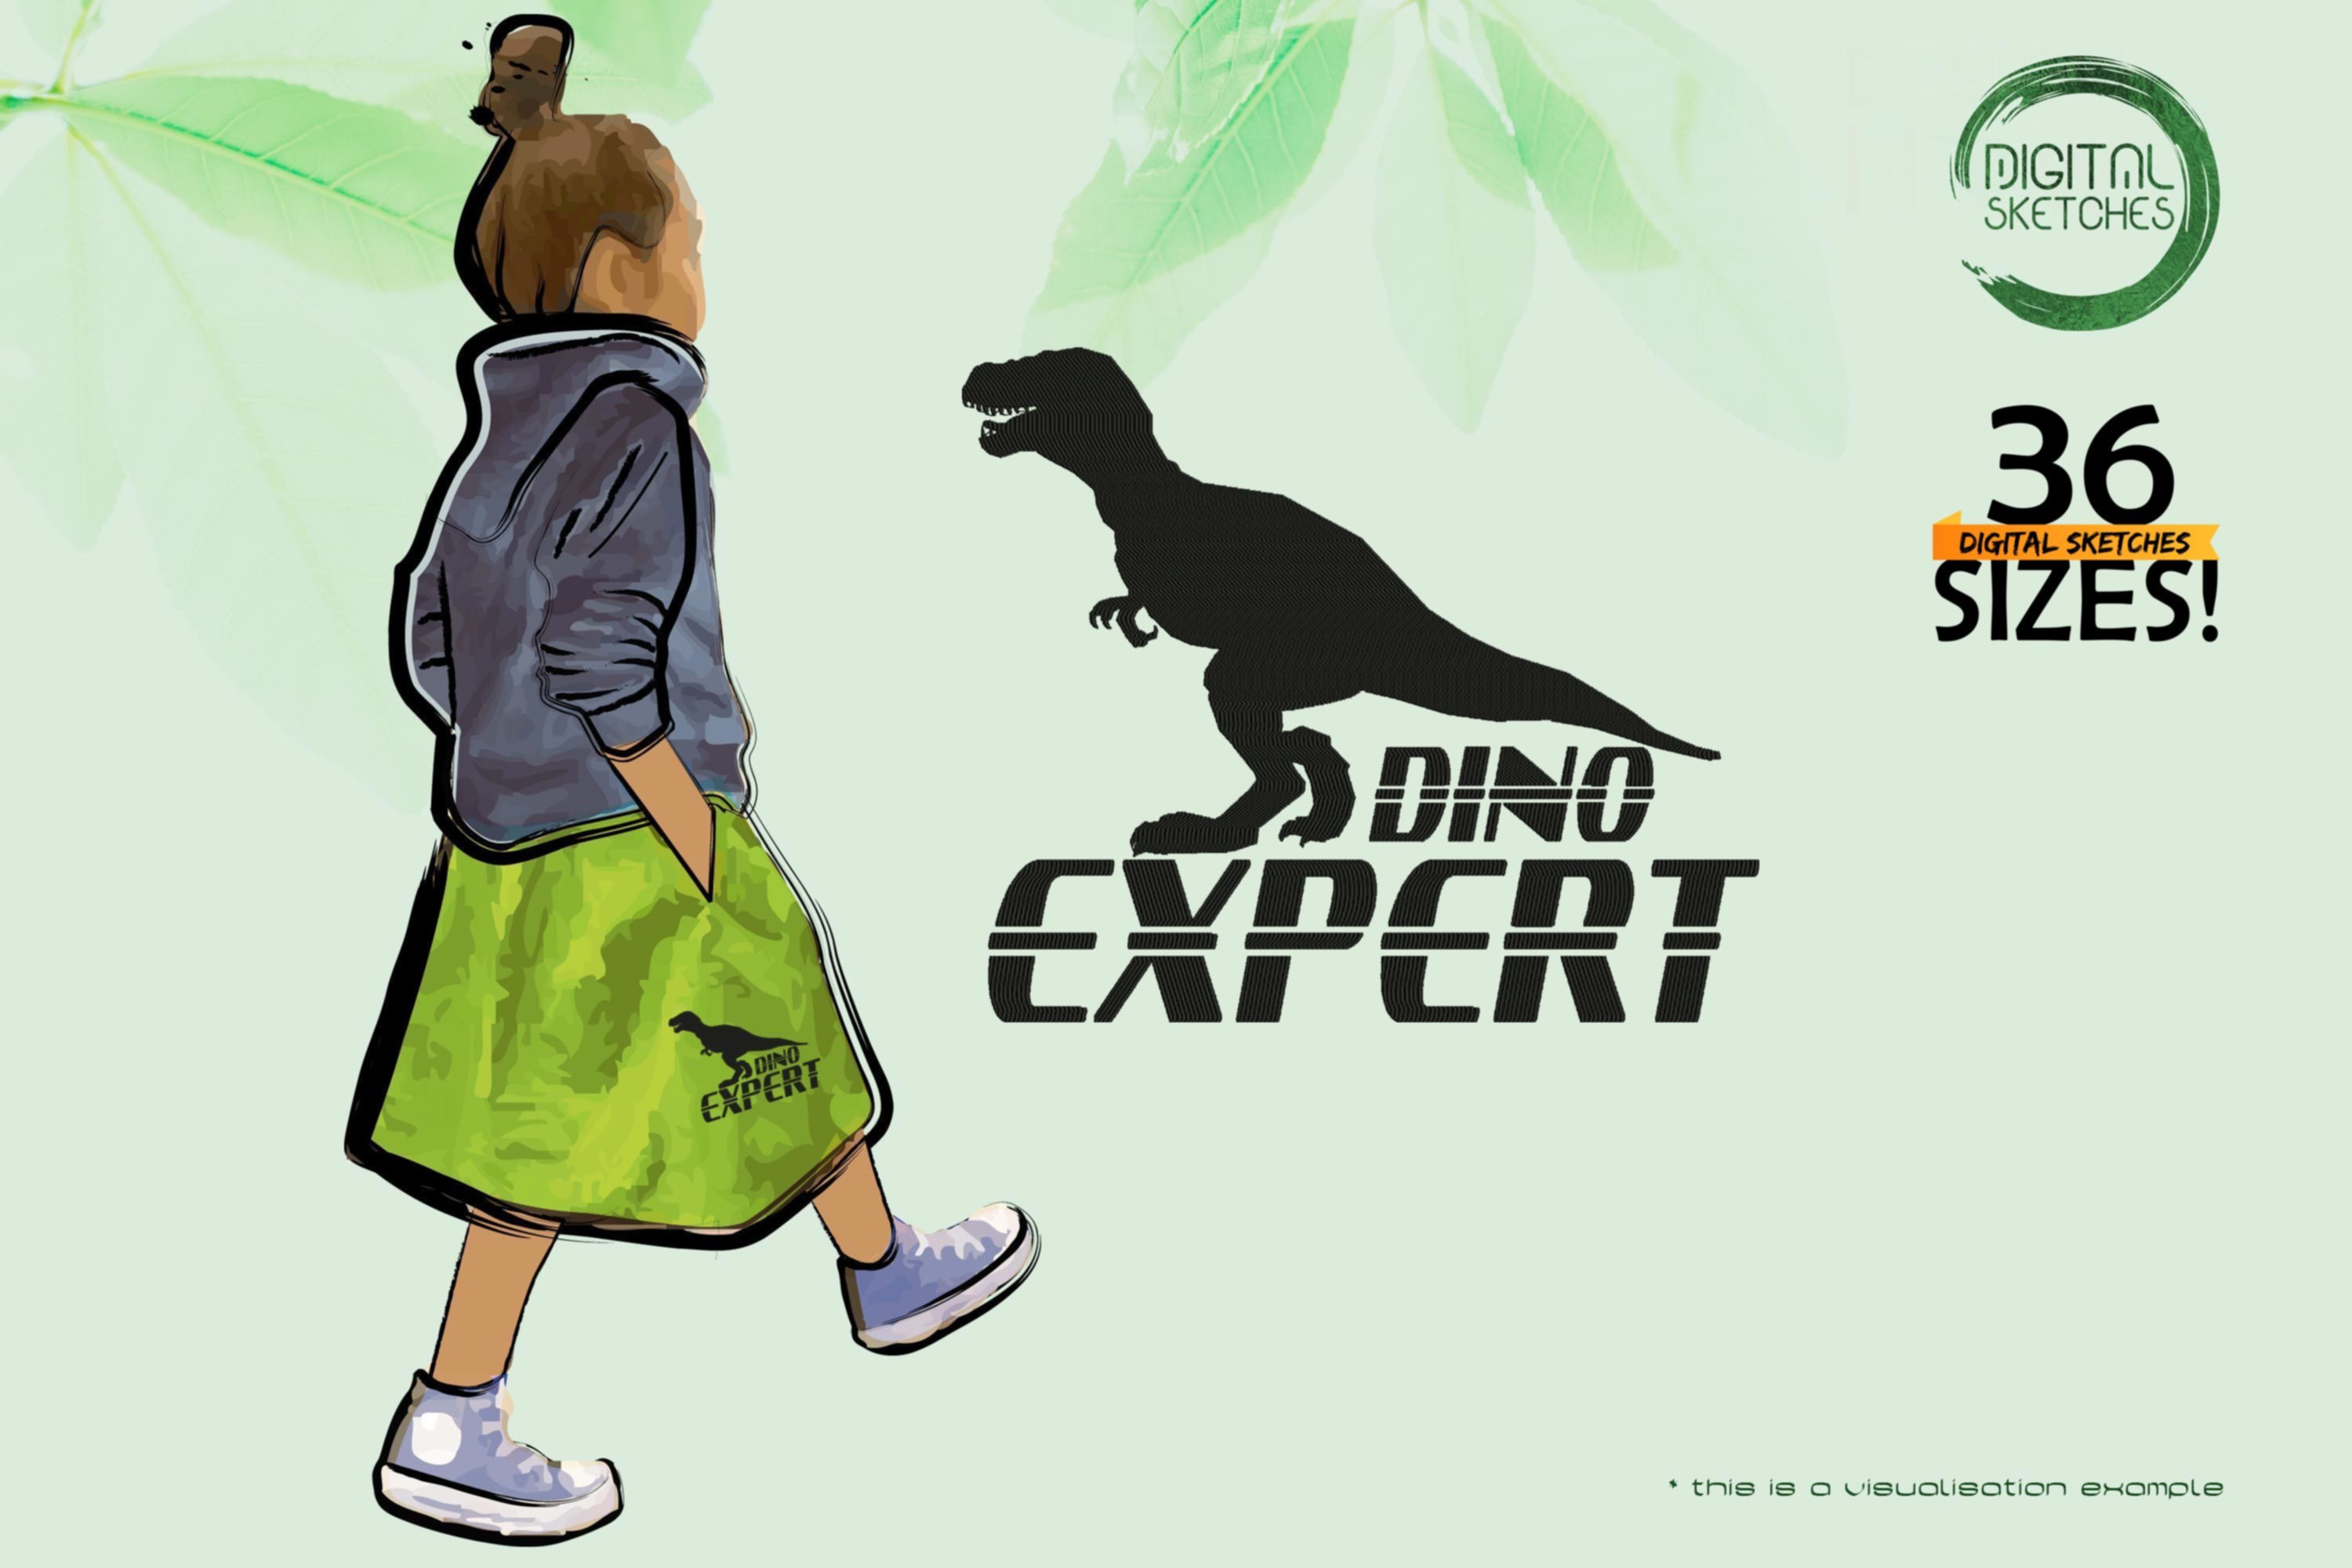 Dino Expert 